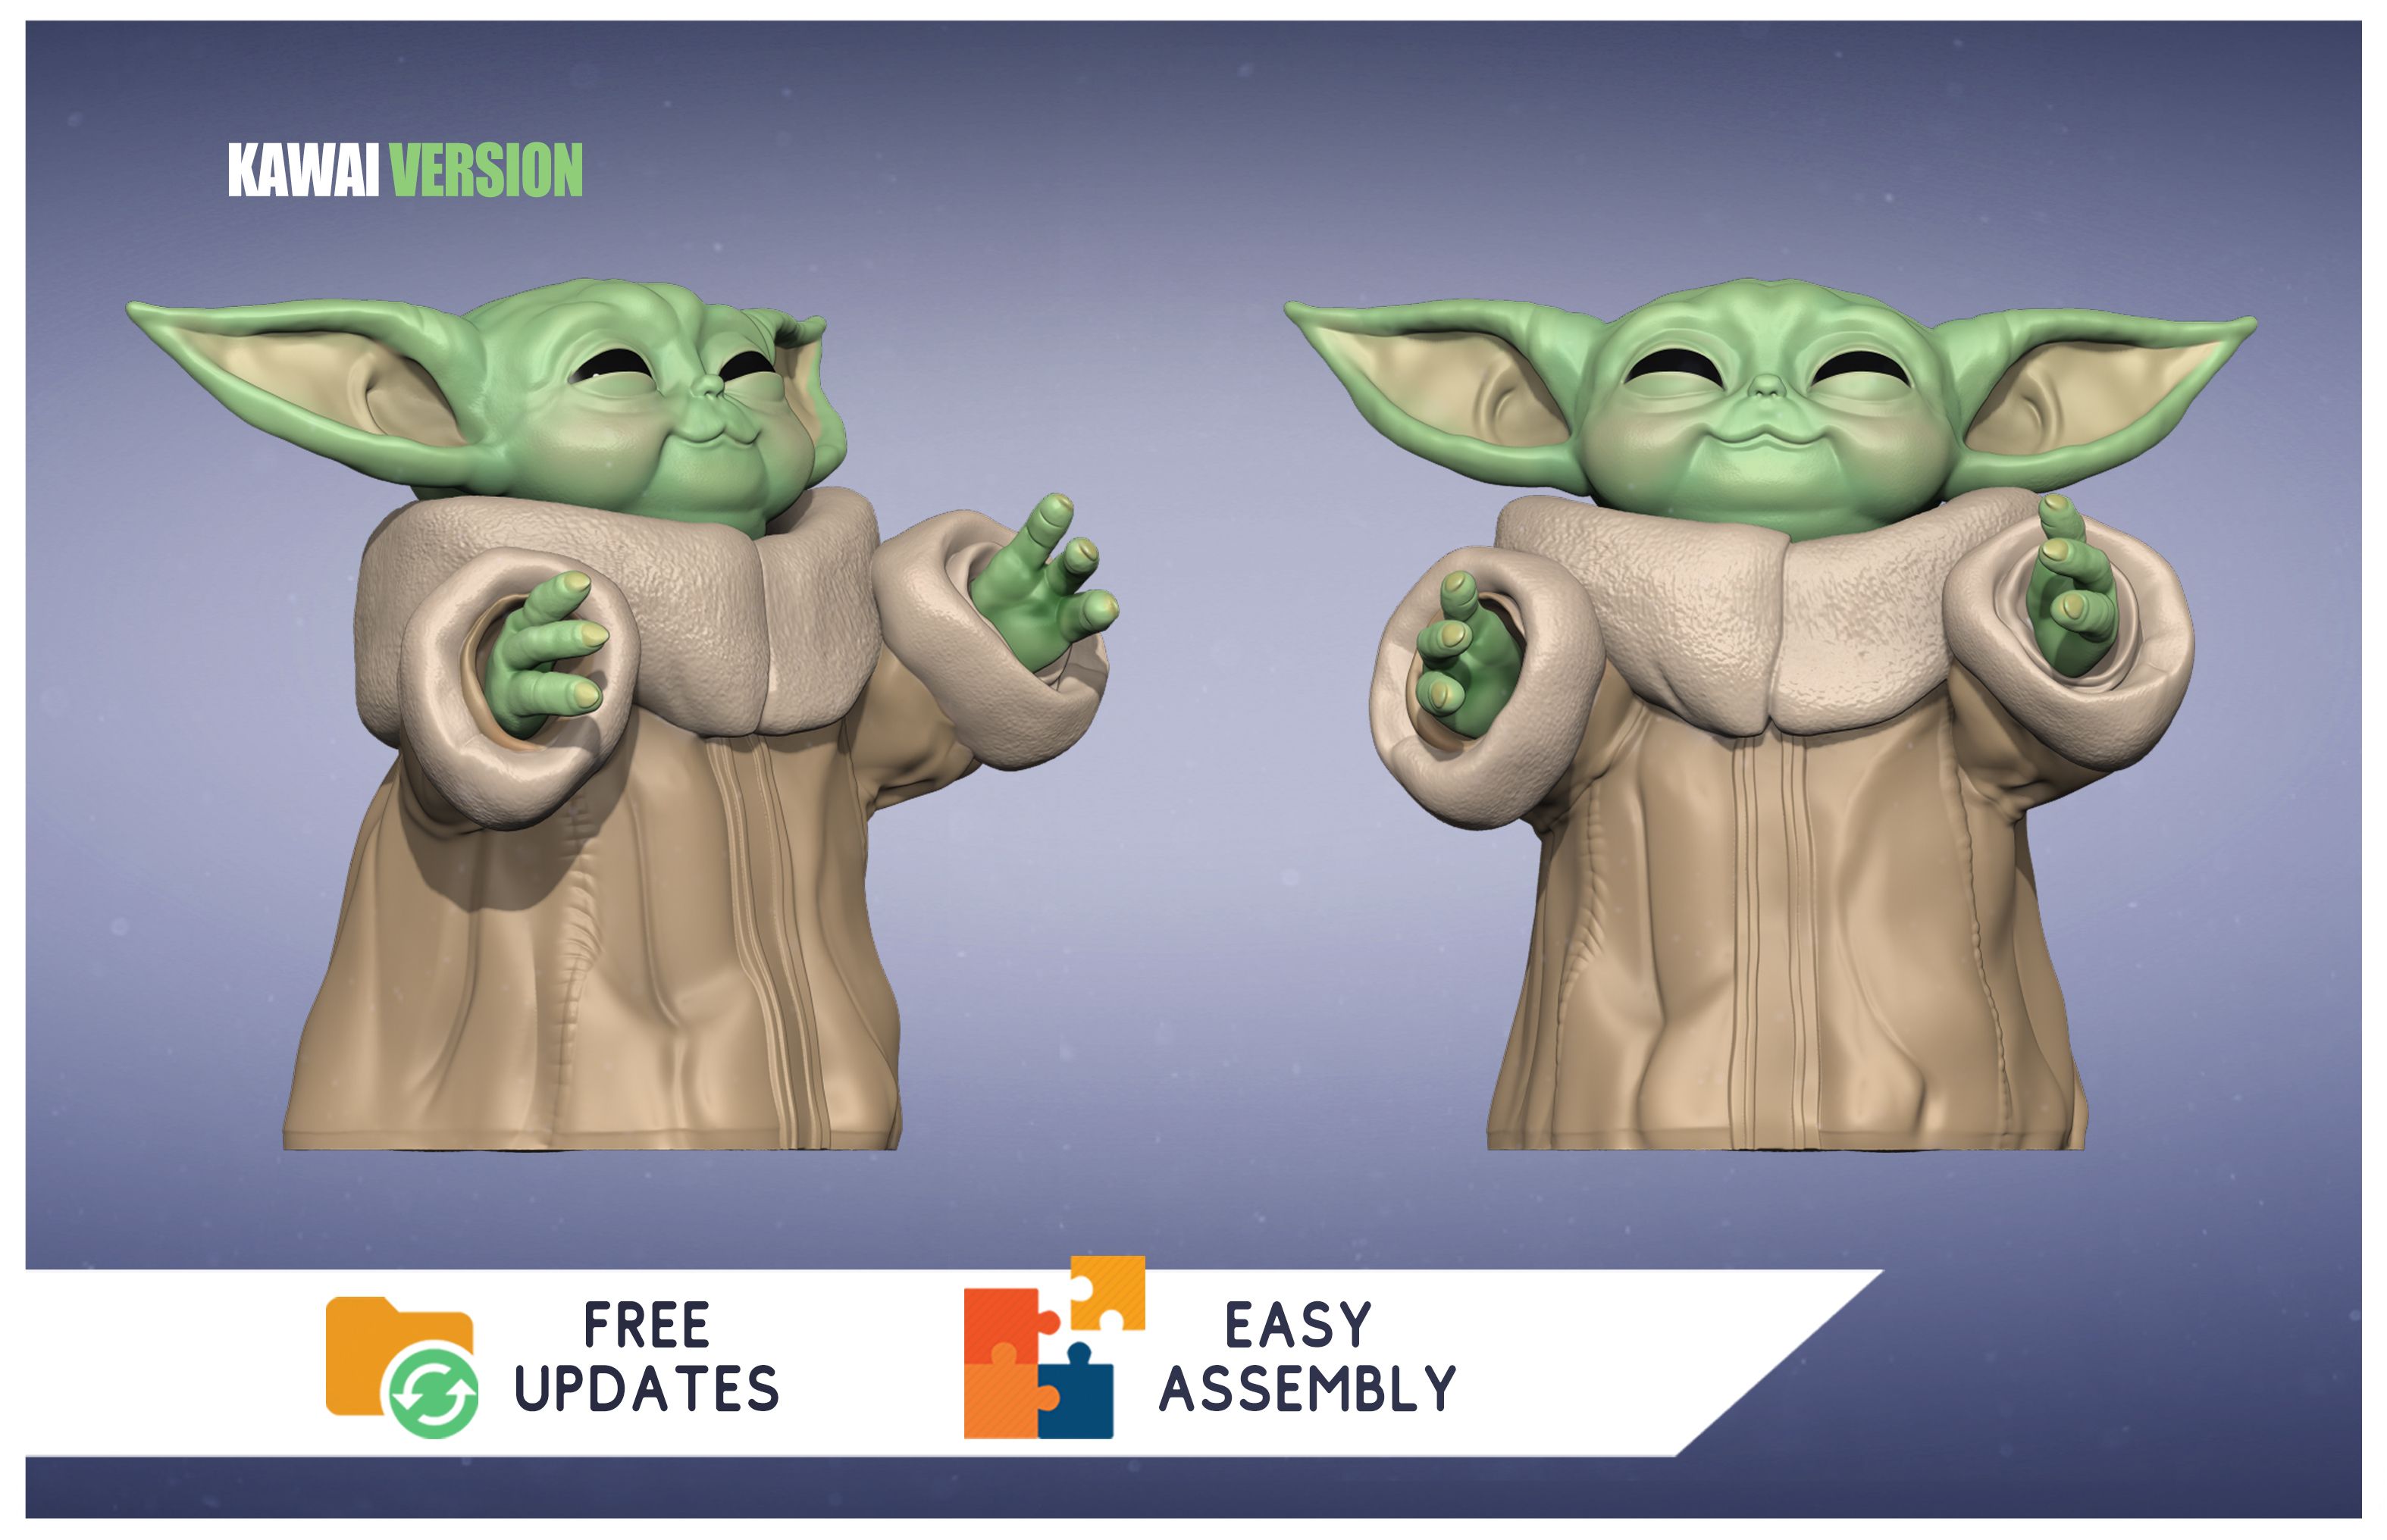 POSE05_KAWAI.jpg Archivo STL Baby Yoda "GROGU" The Child - The Mandalorian - 3D Print - 3D FanArt・Idea de impresión 3D para descargar, HIKO3D